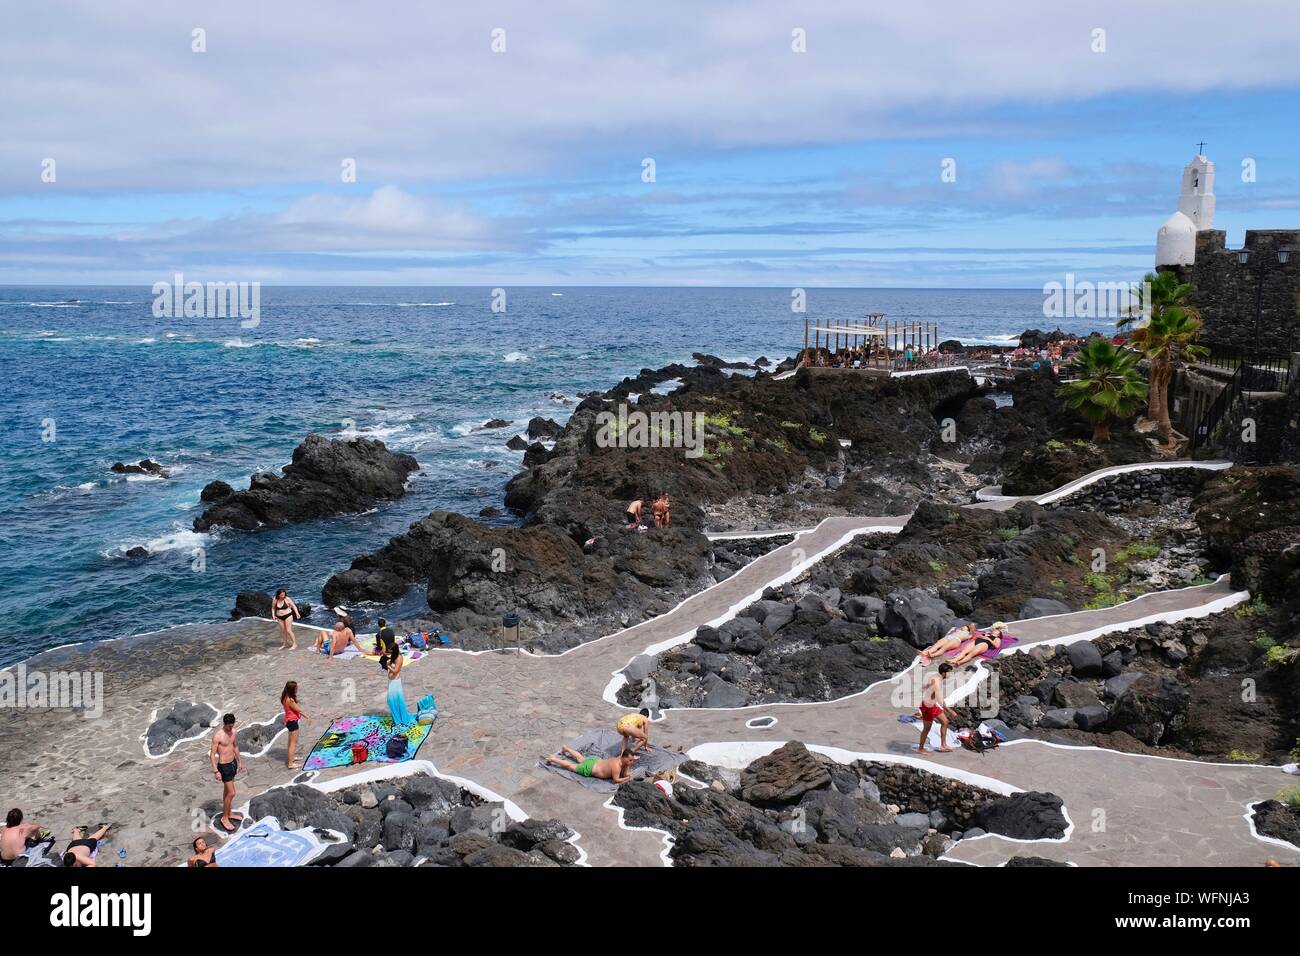 Spagna Isole Canarie Tenerife Island, a Garachico, Caleton, piscine e piscine naturali formate a seguito dell eruzione del vulcano Trevejo nel 1706 Foto Stock